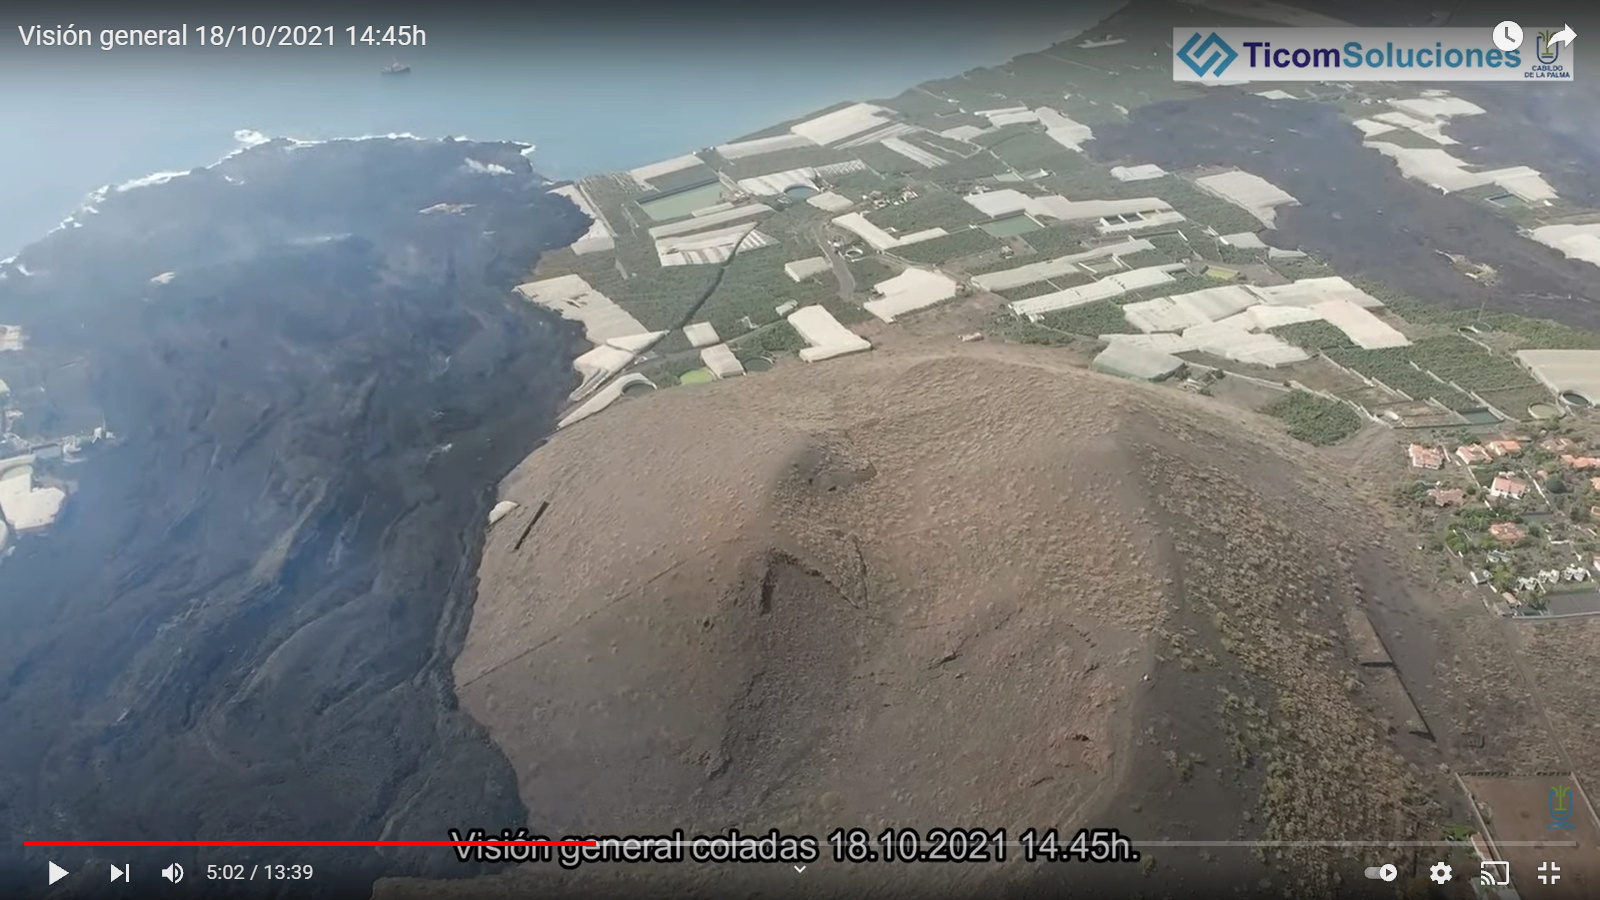 [Bientôt visible sur Google Earth] - Eruption du volcan Cumbre Vieja - Ile de Palma - Canaries - Page 4 06-vd10